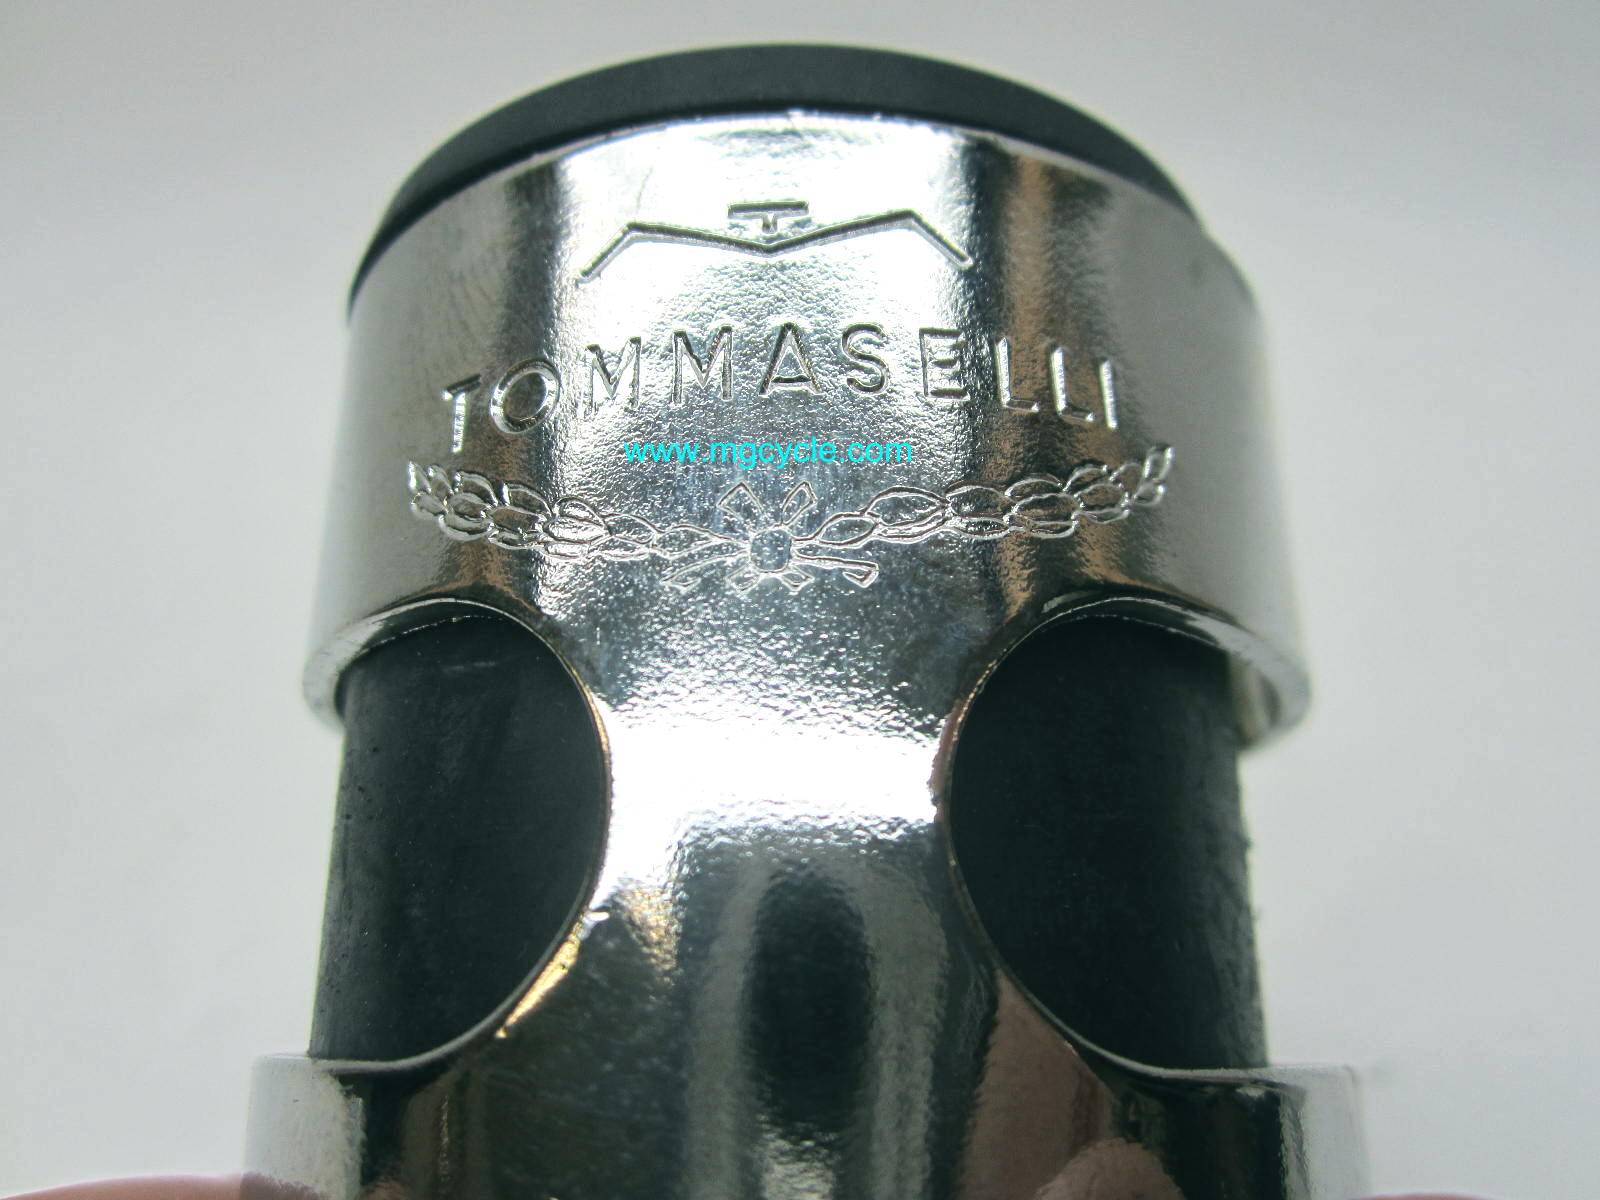 Tommaselli headlight ears, 40mm fork Guzzi Cafe